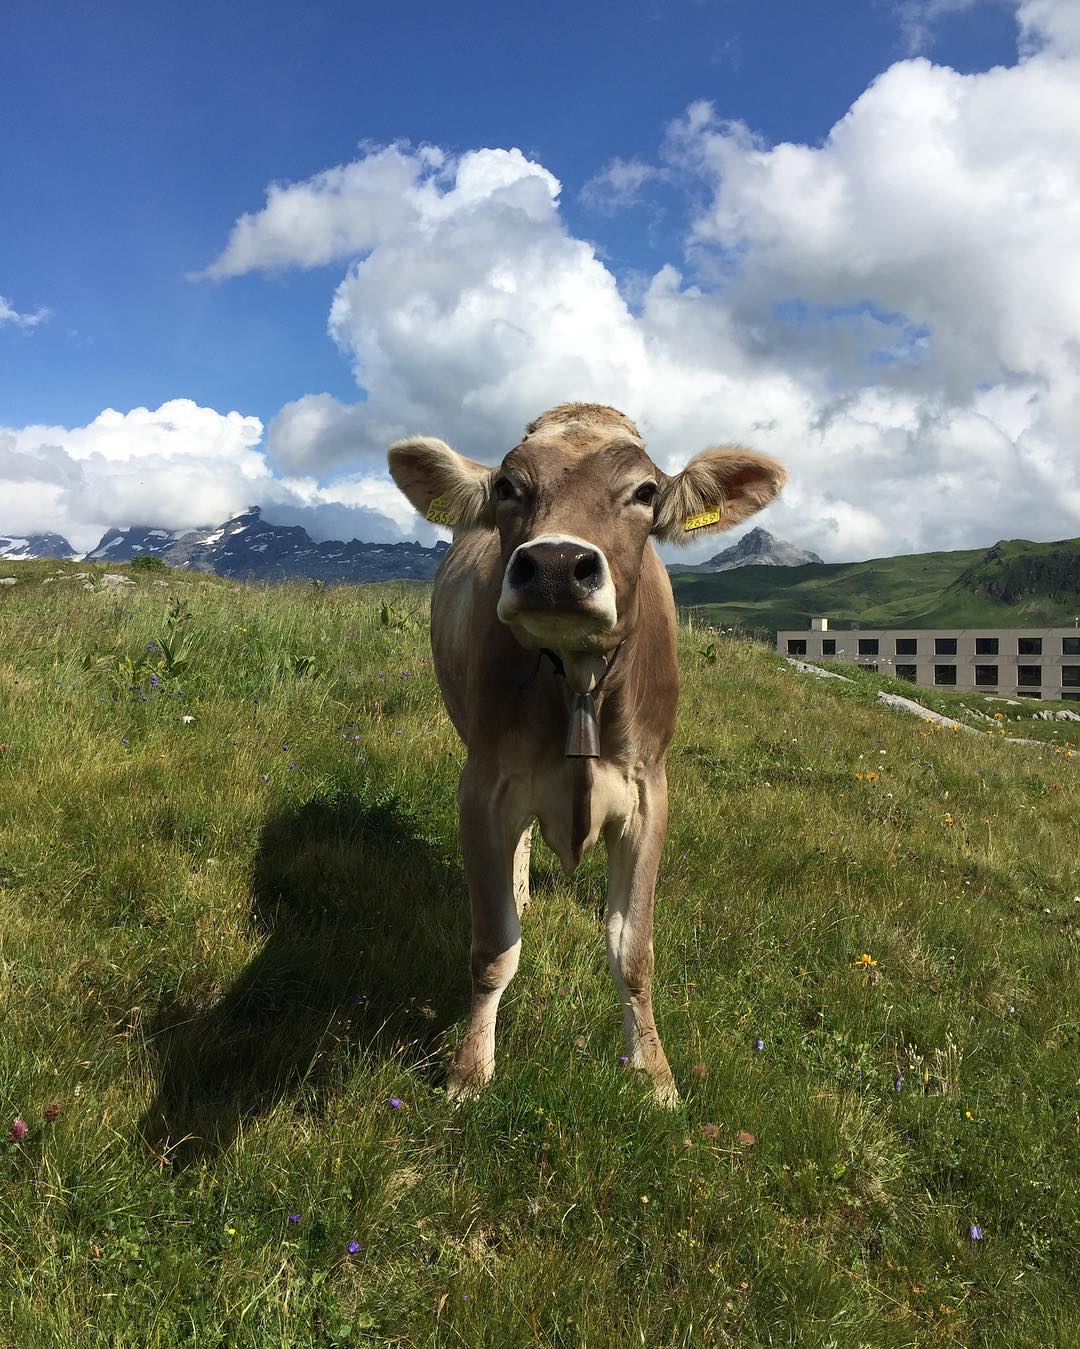 Was machsch dui denn da?? #melchseefrutt #cow #swissnature #switzerland #mountains #nature